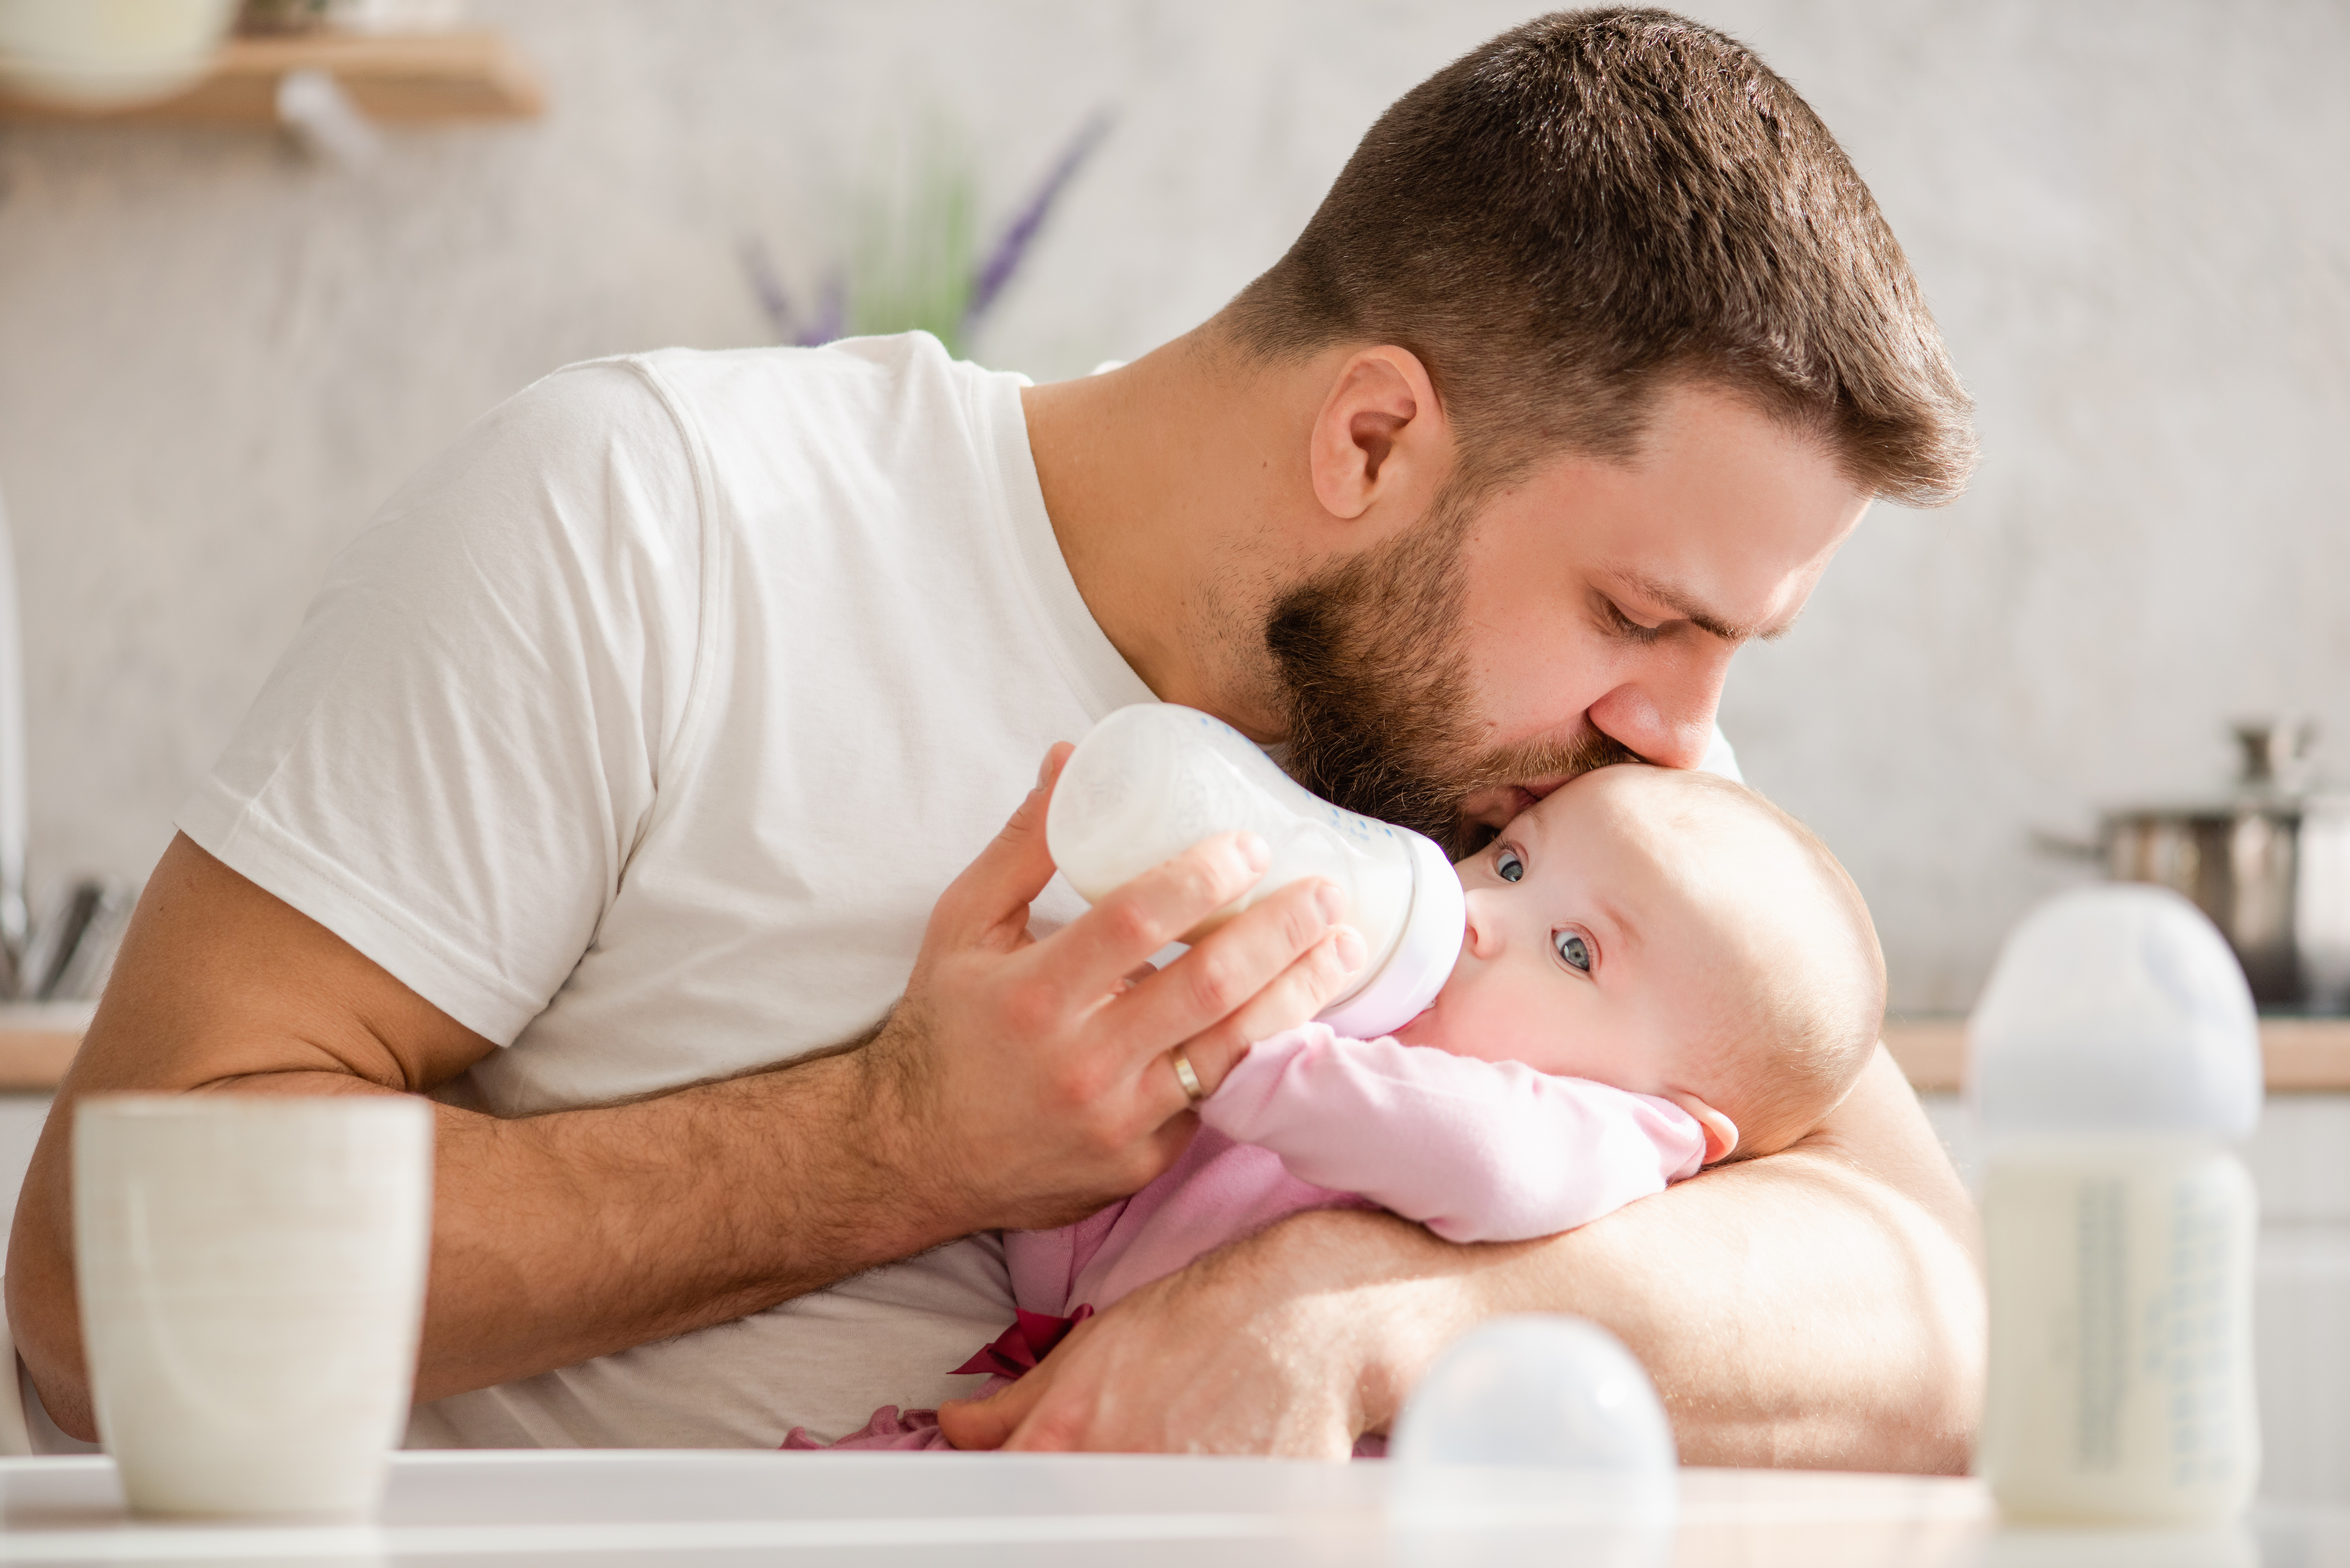 Suivre la santé des pères et leurs facteurs de mode de vie pourrait contribuer à améliorer les résultats de santé pour toute la famille (Visuel Adobe Stock 262303213).